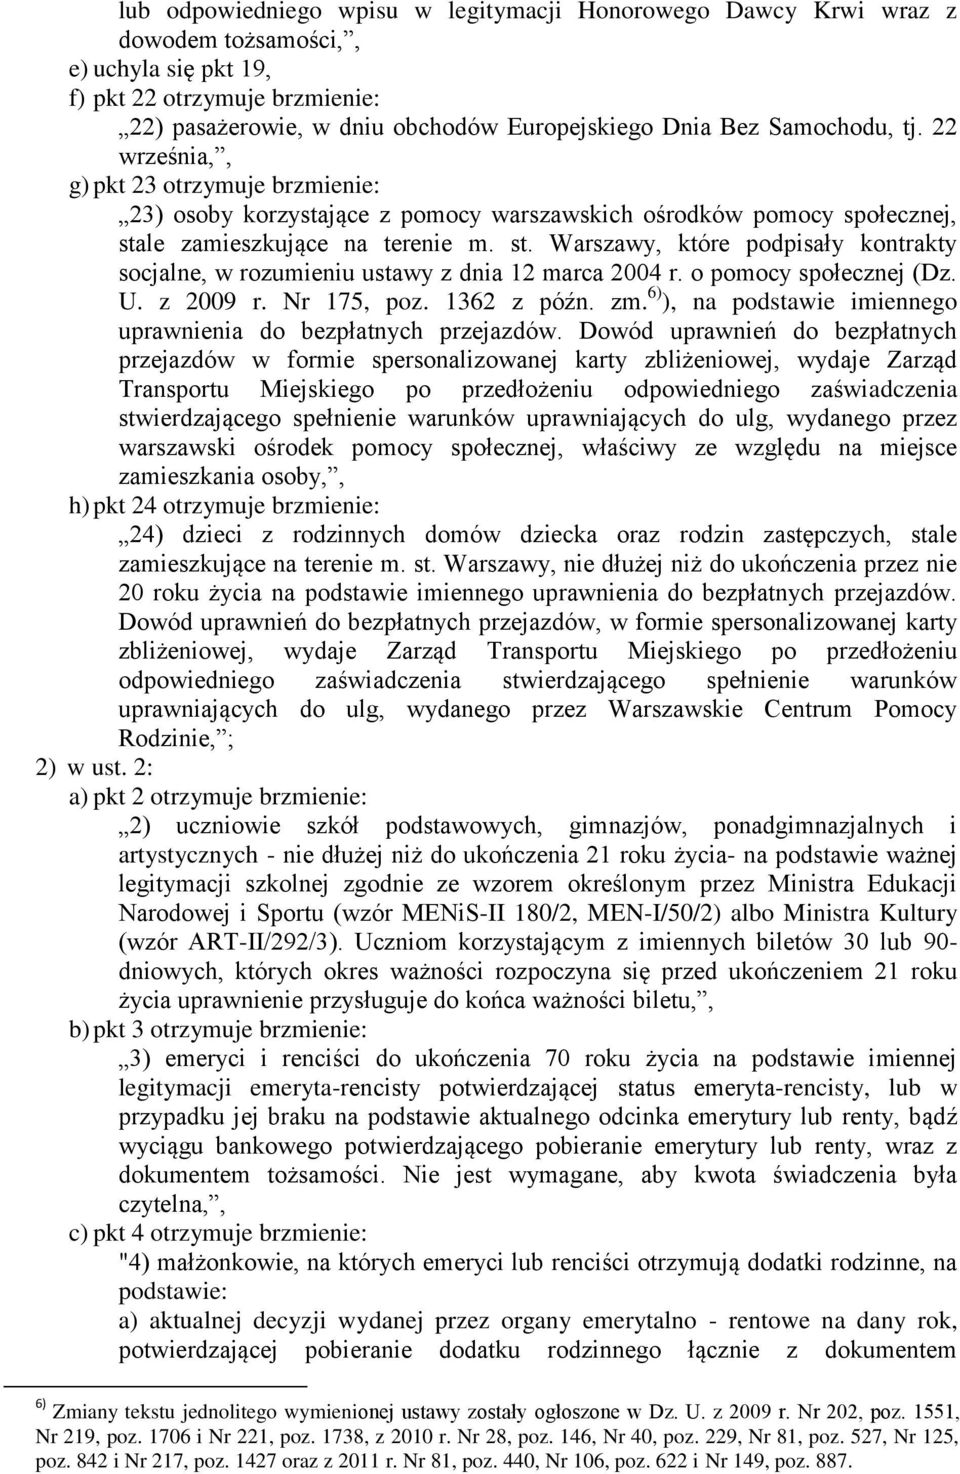 le zamieszkujące na terenie m. st. Warszawy, które podpisały kontrakty socjalne, w rozumieniu ustawy z dnia 12 marca 2004 r. o pomocy społecznej (Dz. U. z 2009 r. Nr 175, poz. 1362 z późn. zm.